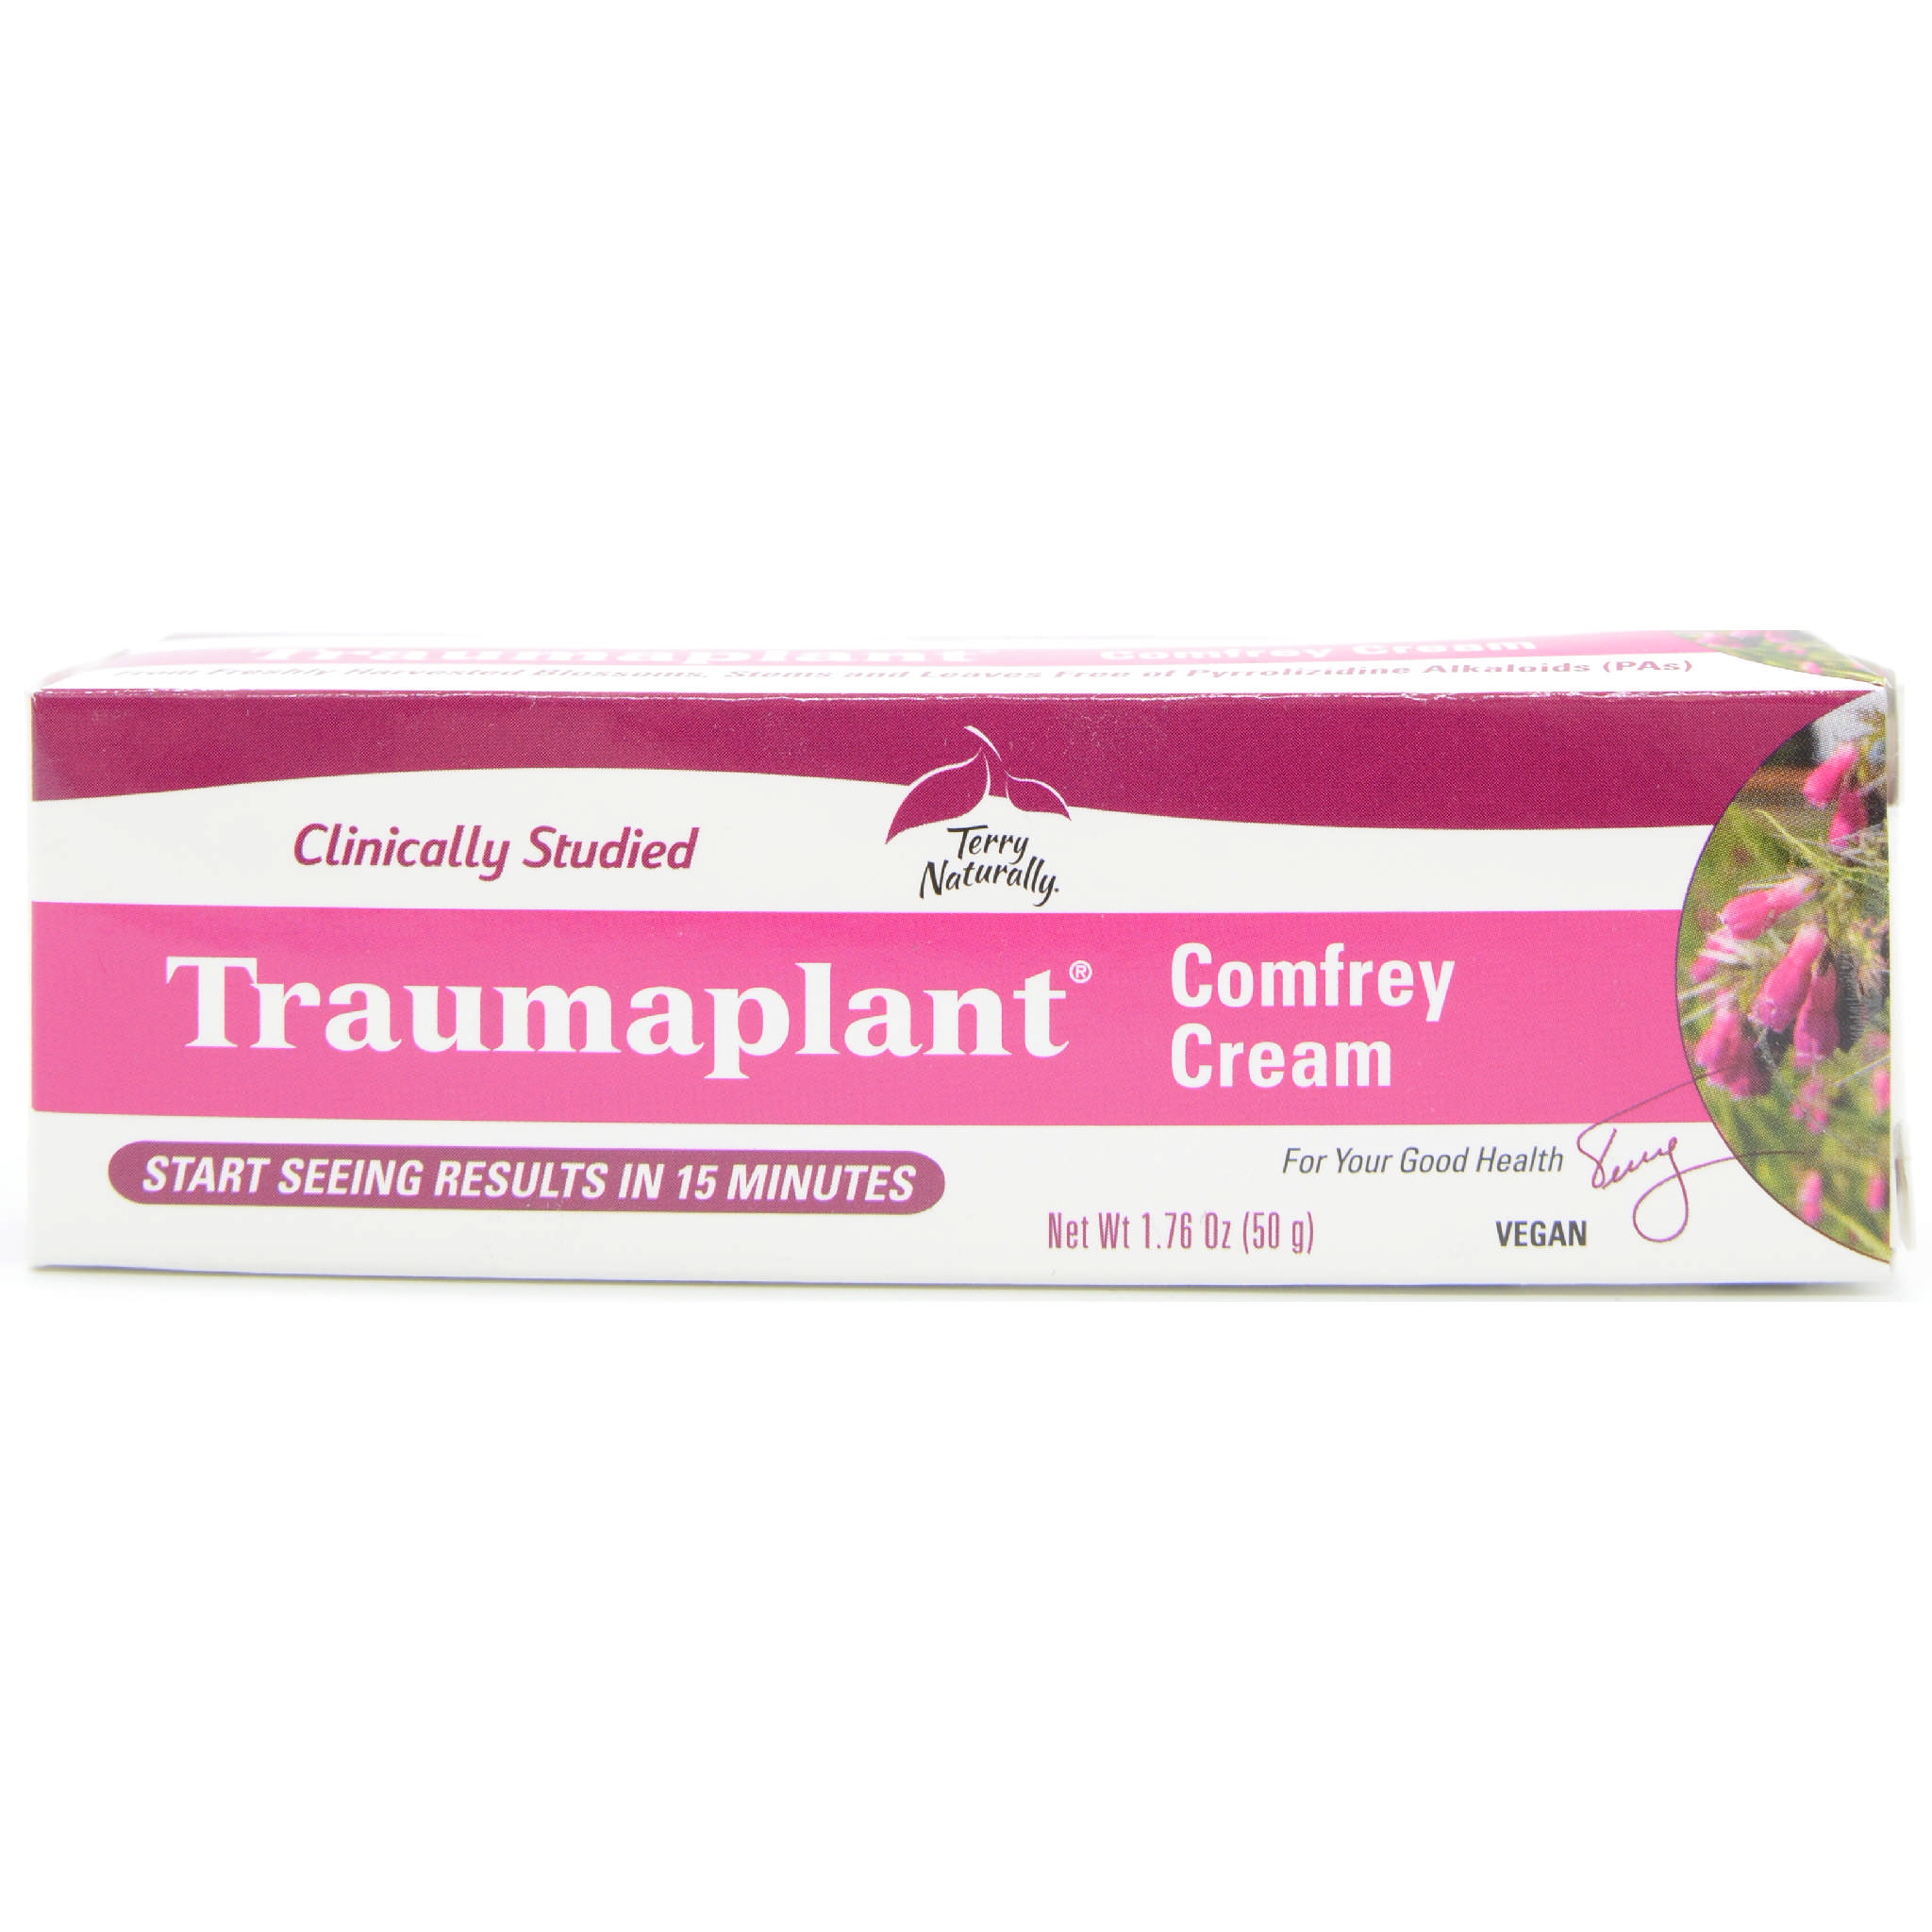 Terry Naturally - Comfrey Cream Traumaplant